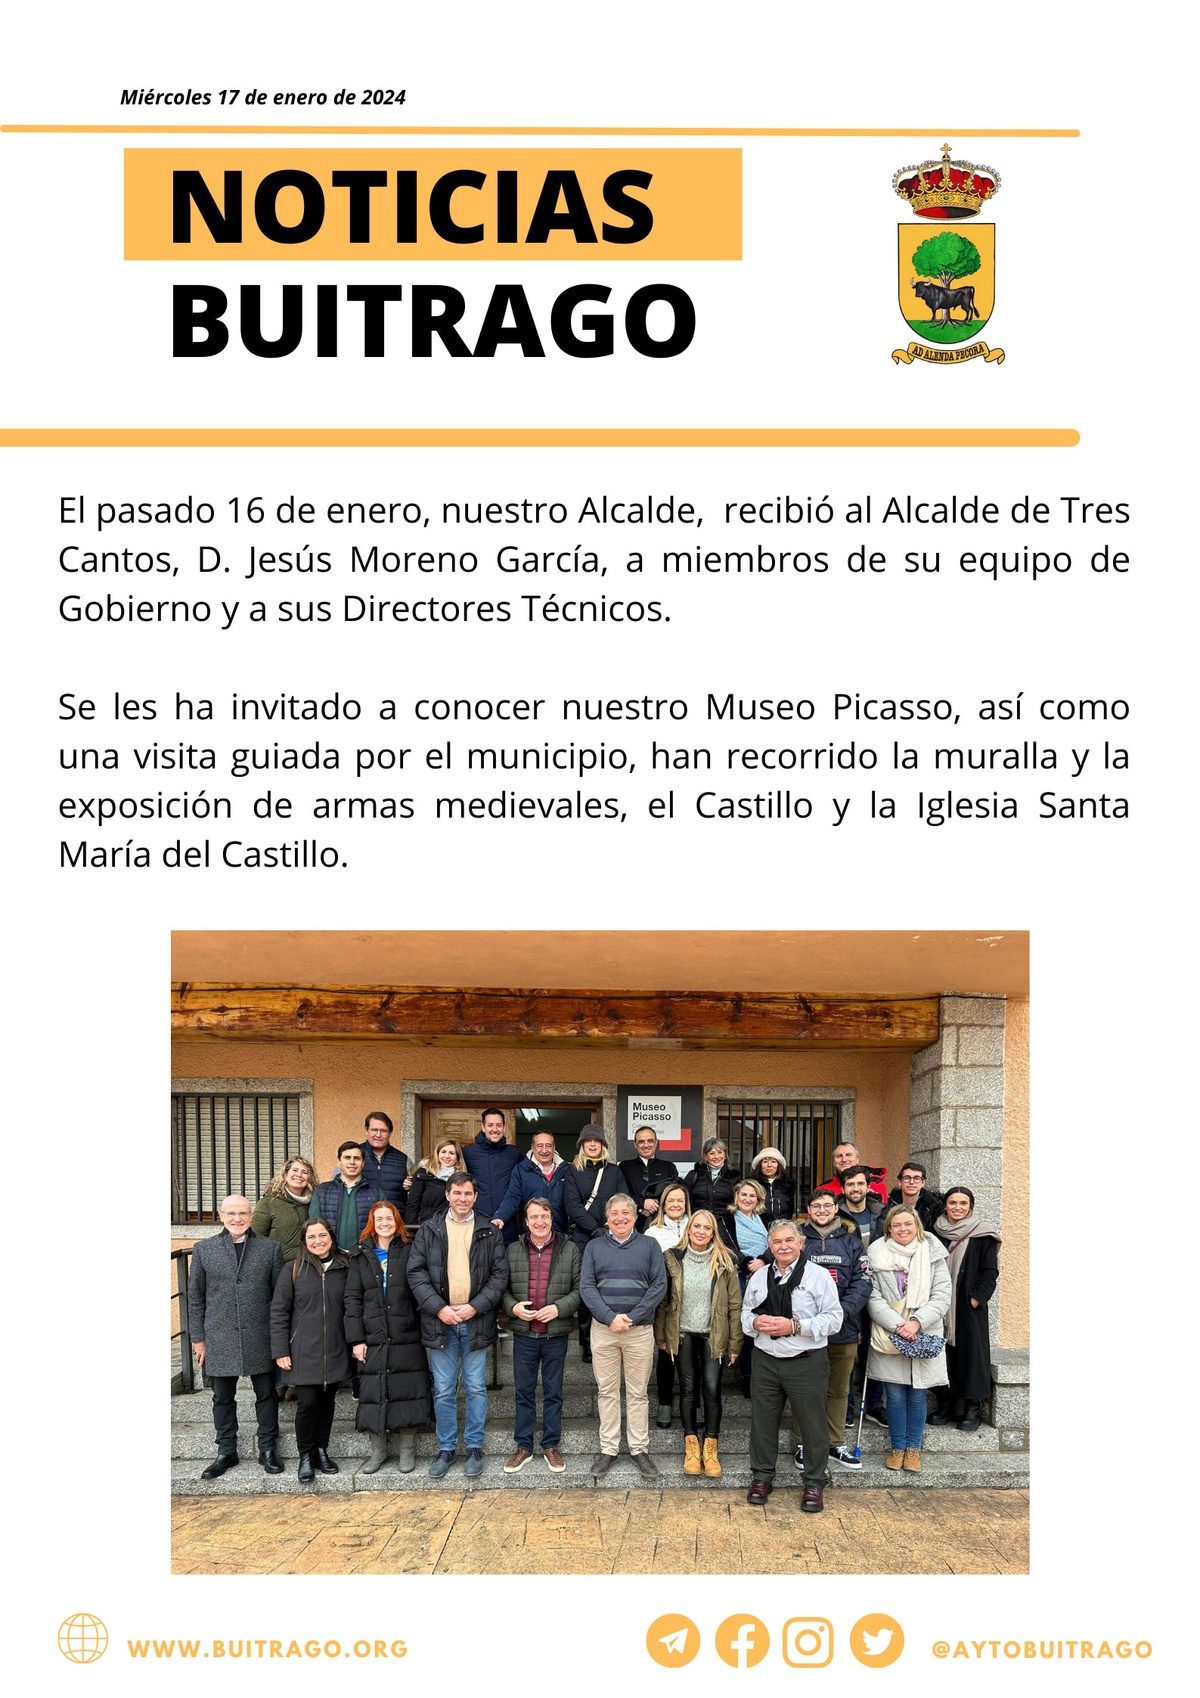 NOTICIAS DE BUITRAGO 17 01 2024